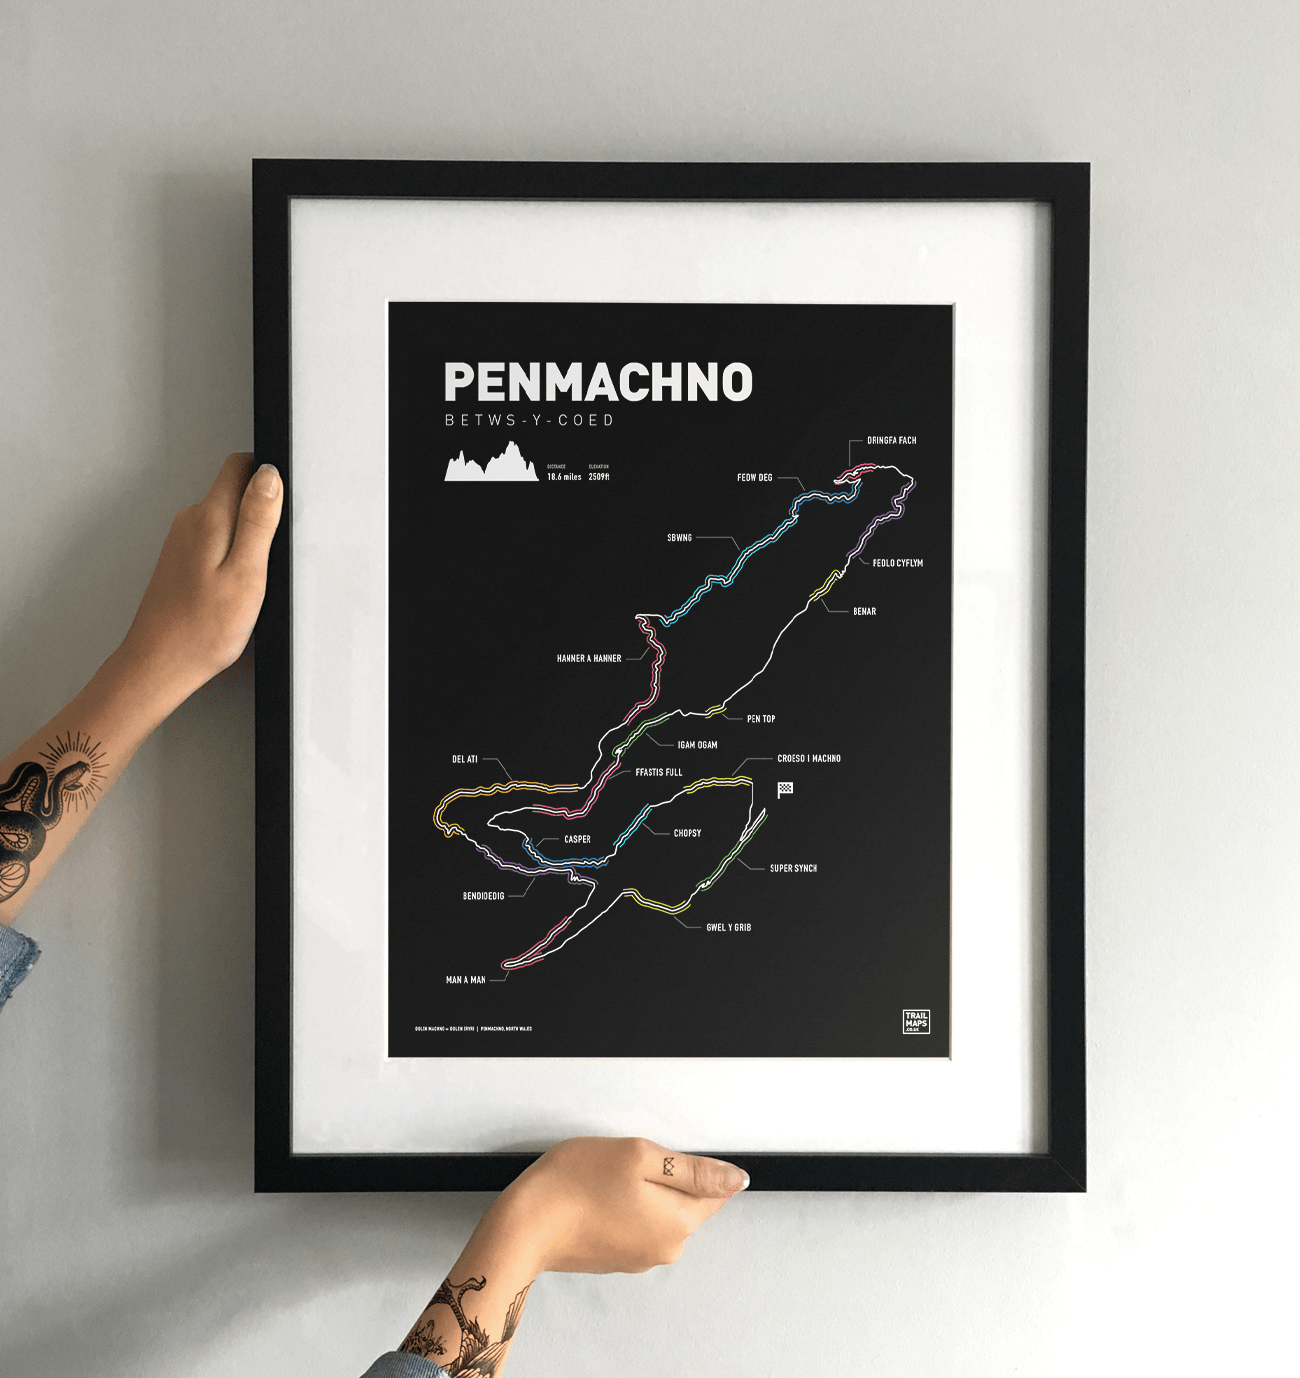 Penmachno Art Print - TrailMaps.co.uk